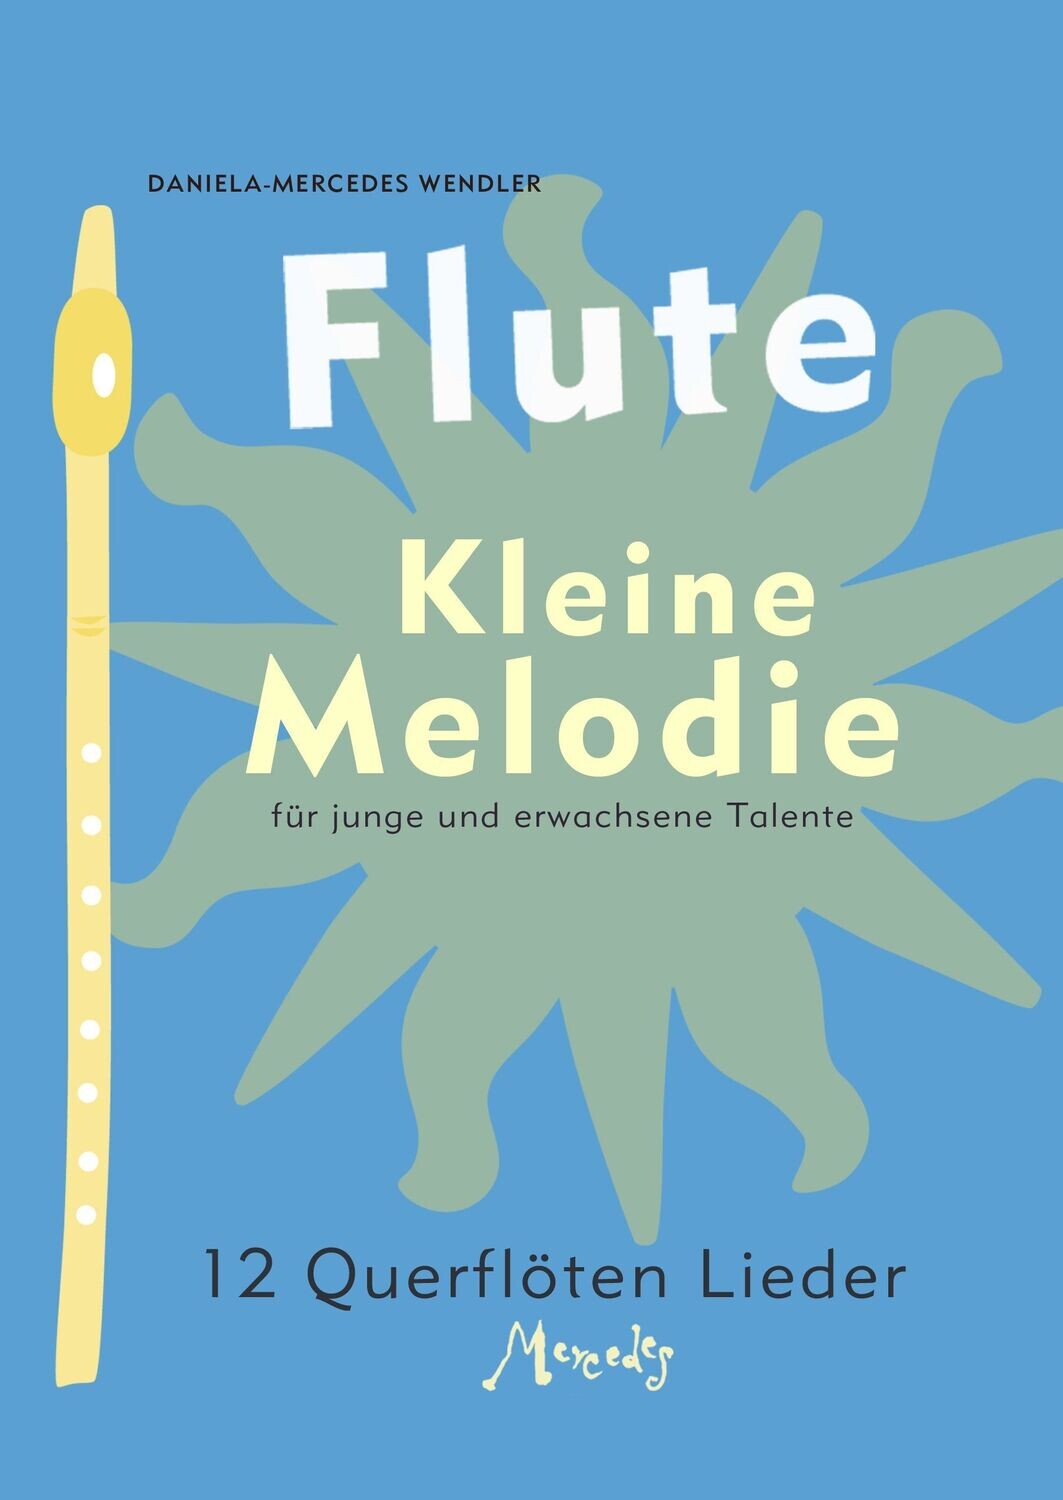 Notenheft "Kleine Melodie 01" mit 12 Liedern für Querflötenschüler